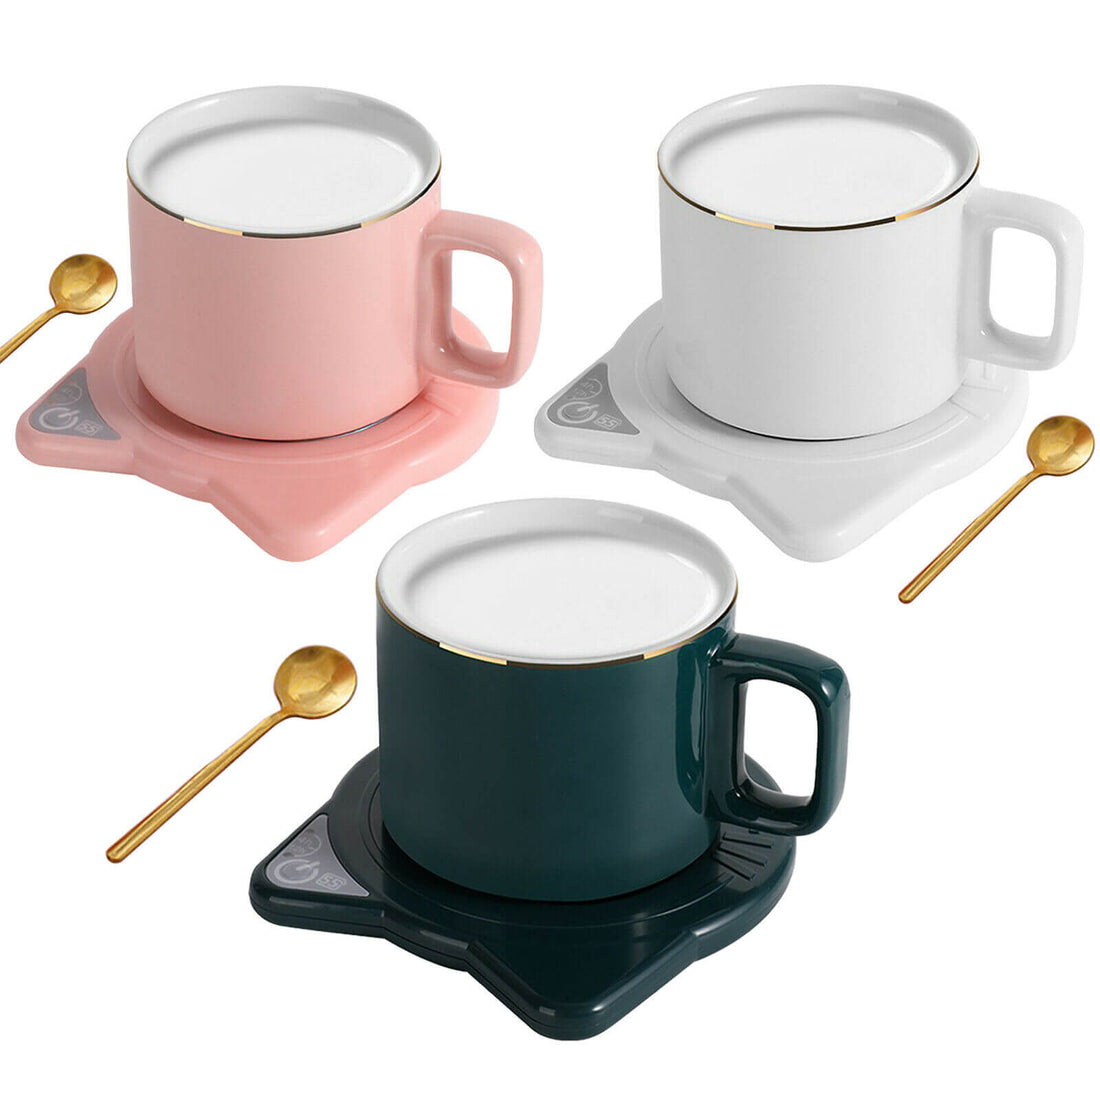 https://geecomfy.com/cdn/shop/products/Coffee-Tea-Heater-Cup-Mug-Warmer-Pad_7_1100x.jpg?v=1656555759